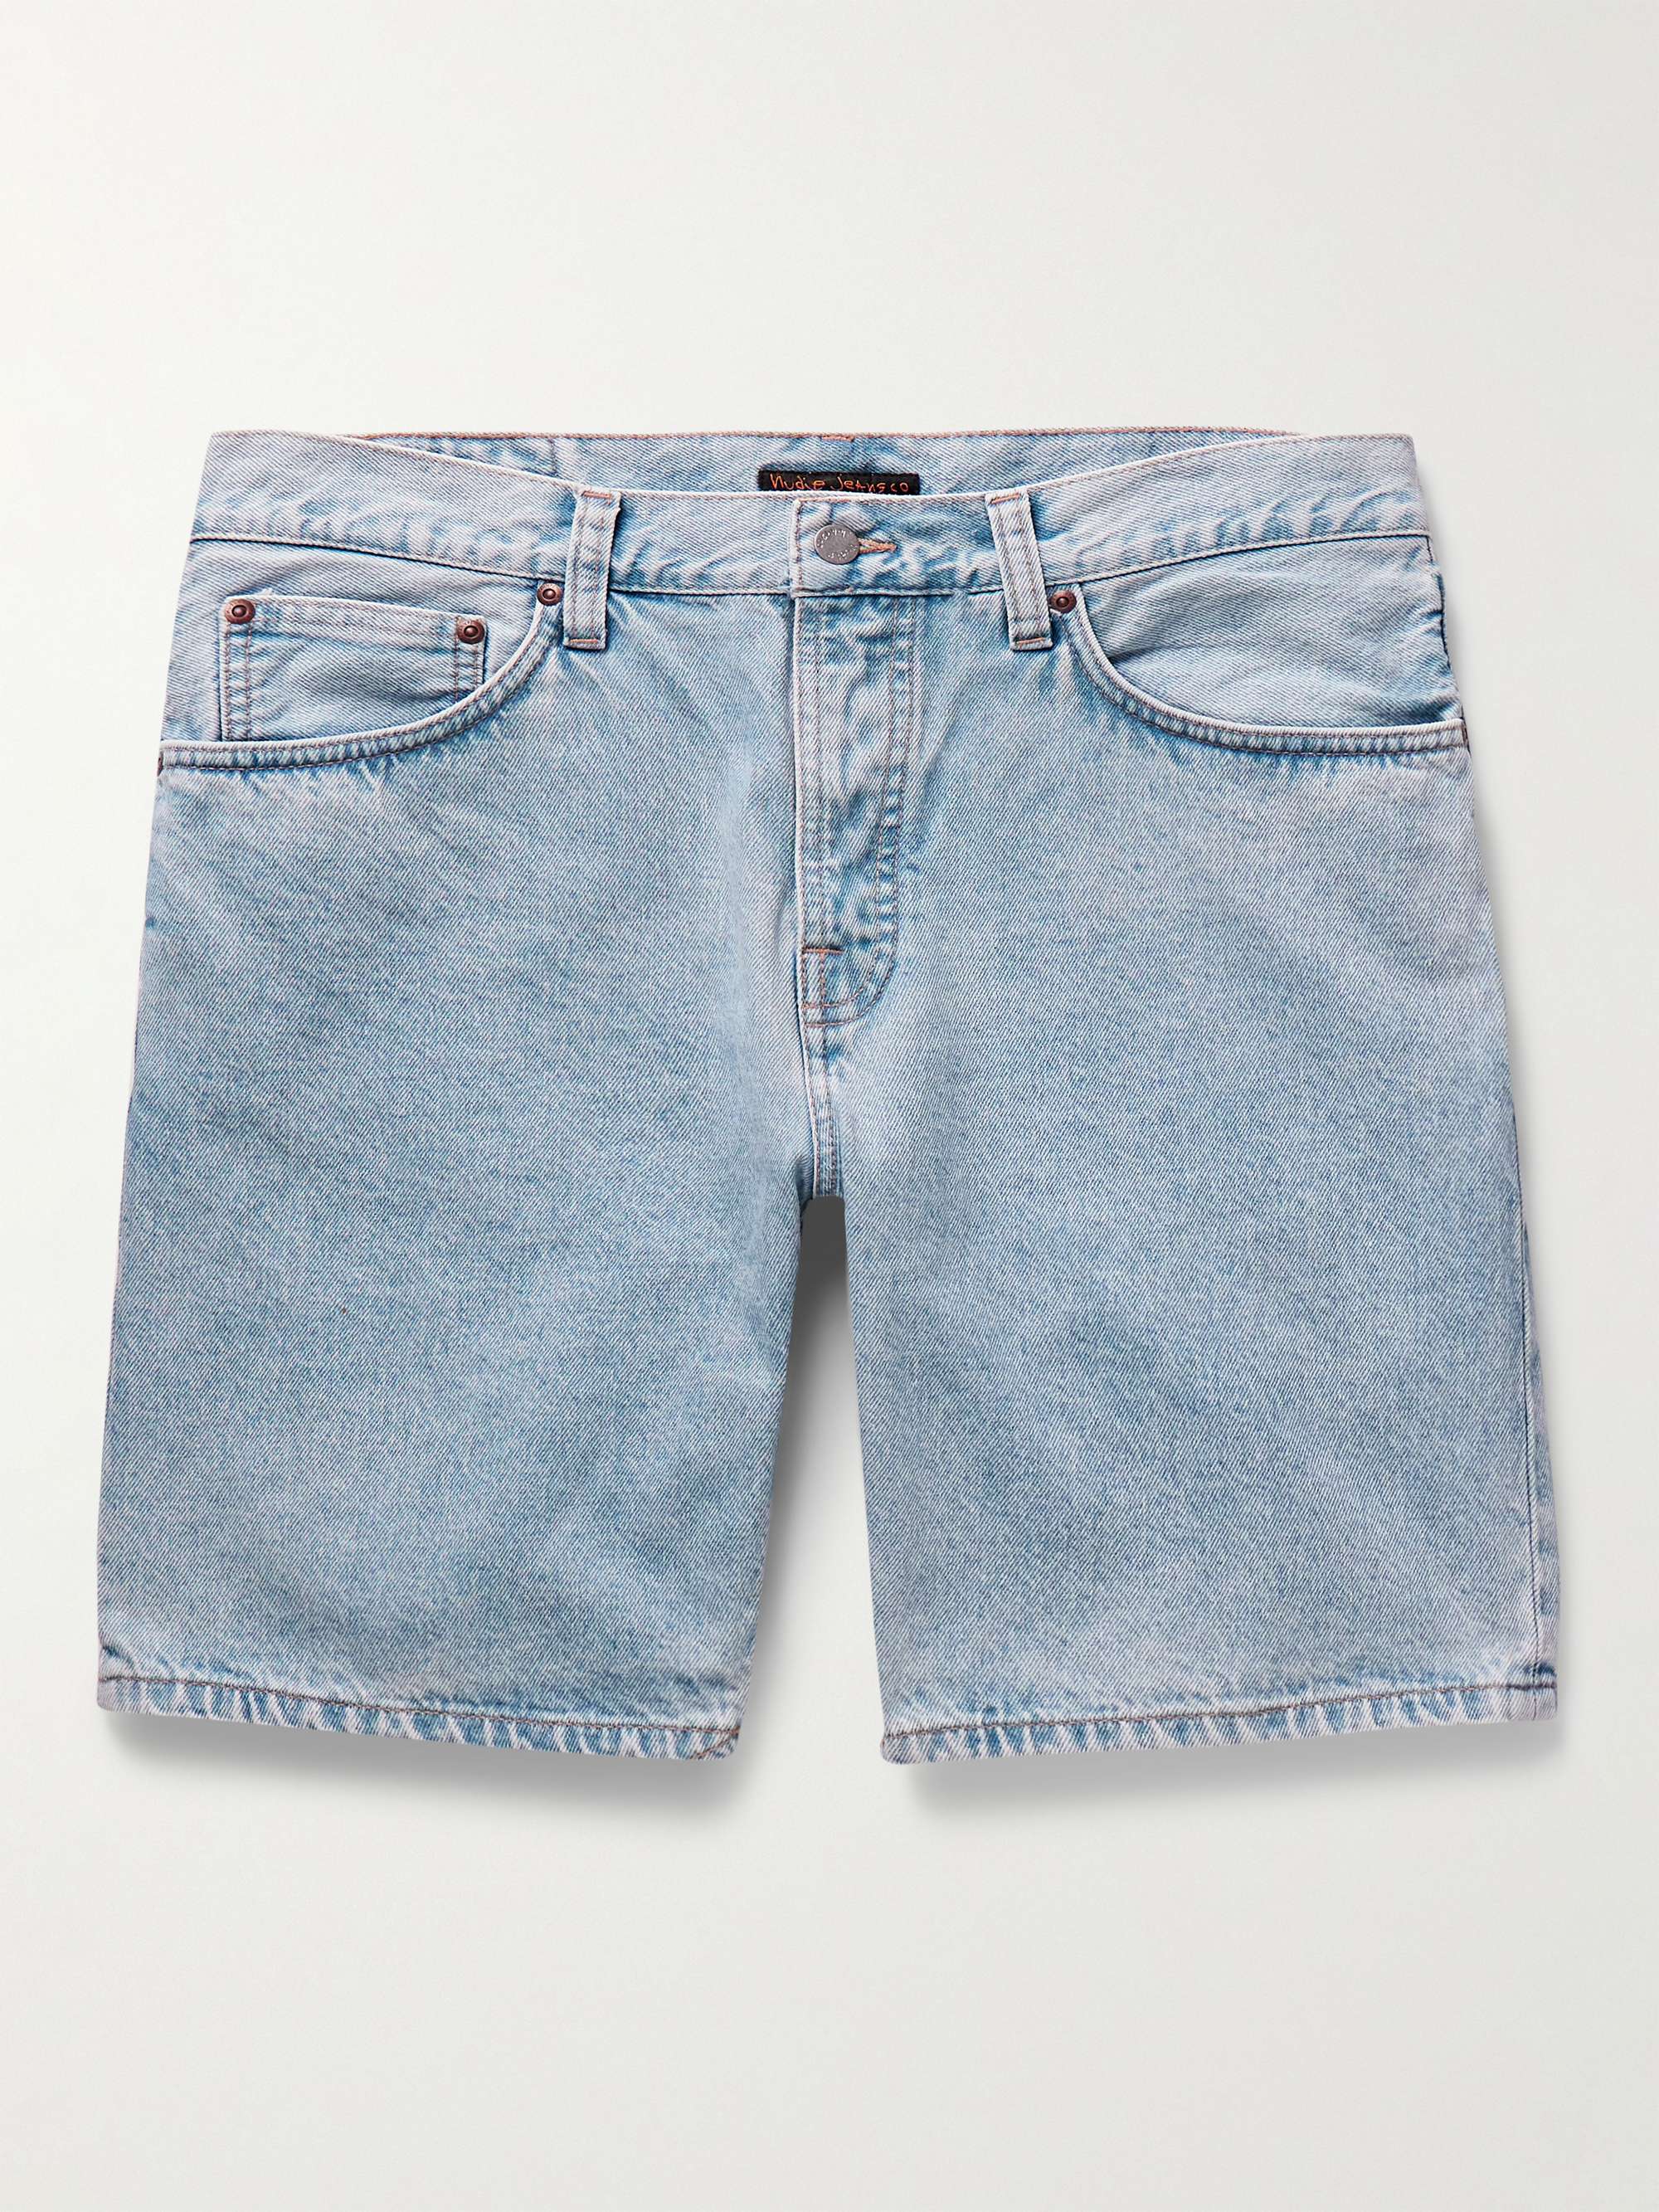 Denim Cargo Shorts For Men at Rs 249 | Surat| ID: 25929625530-donghotantheky.vn